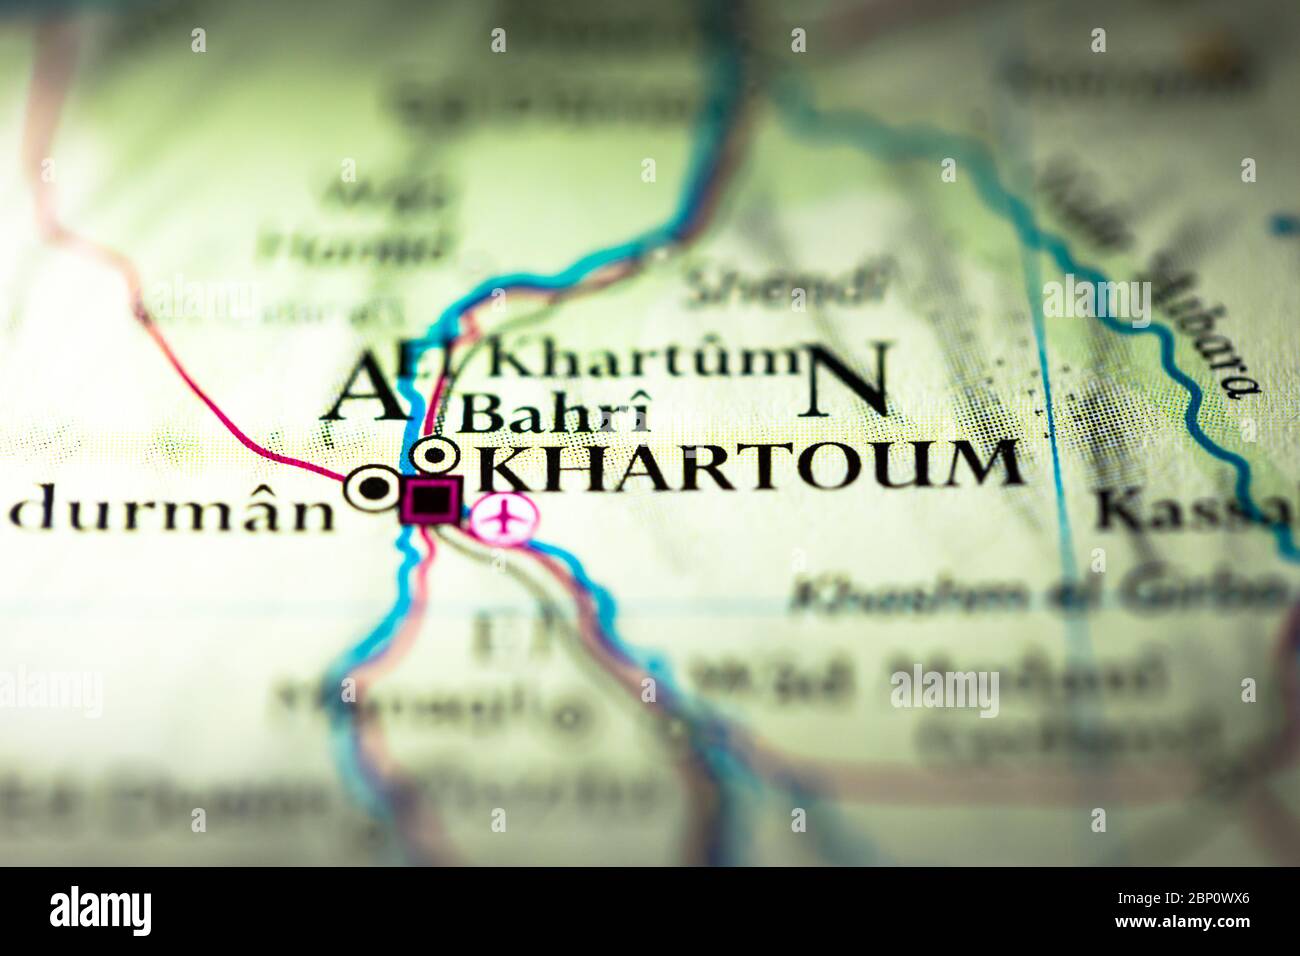 Faible profondeur de champ accent sur la carte géographique emplacement de la ville de Khartoum Khartum au Soudan Afrique arabe continent sur atlas Banque D'Images